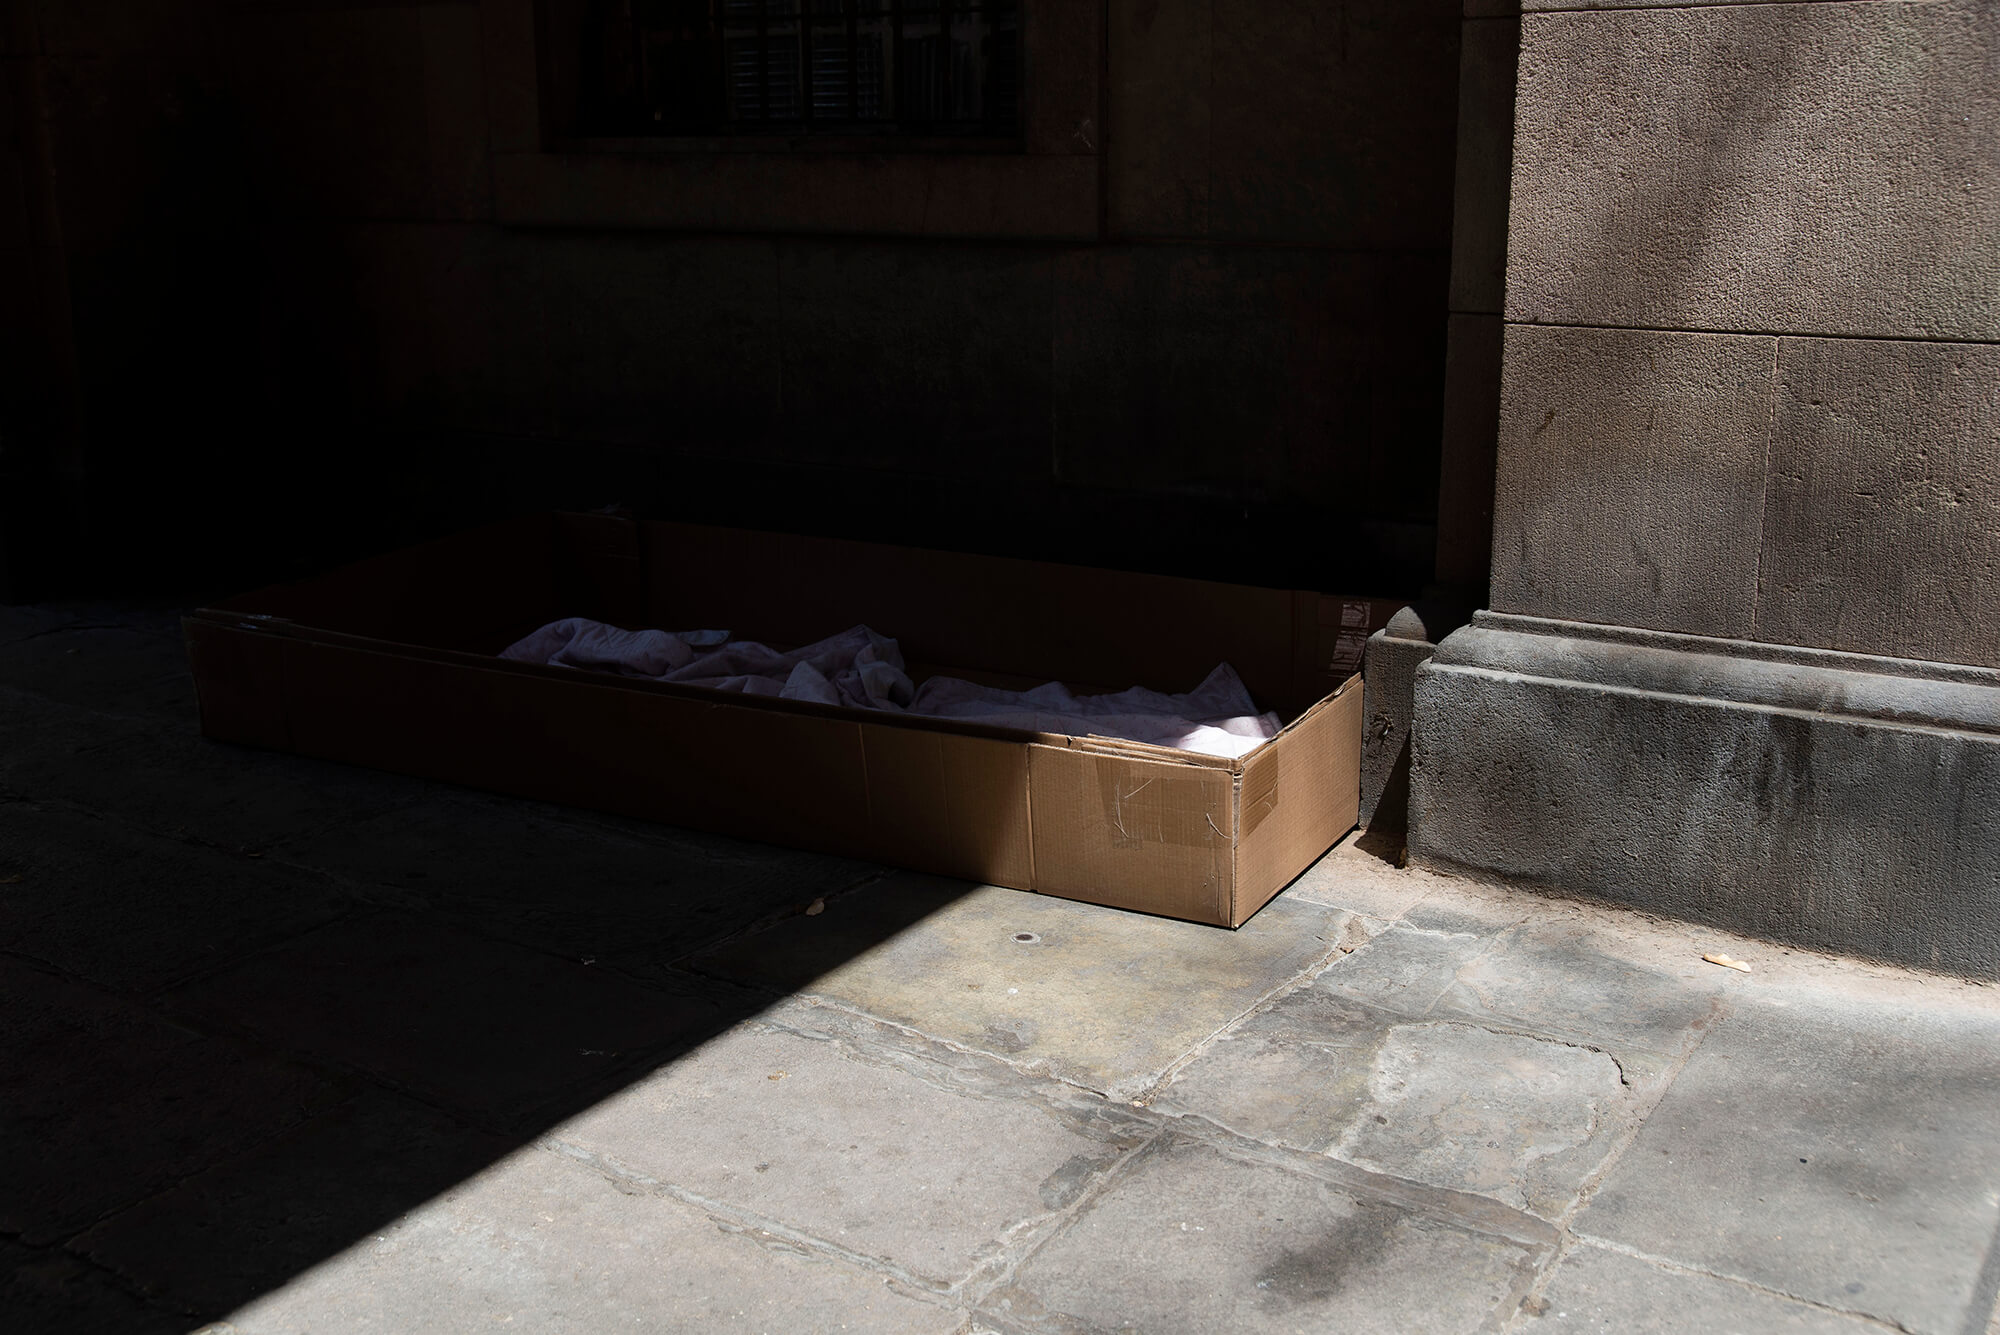 Cartones y mantas a modo de cama en la Plaça Vicenç Martorell